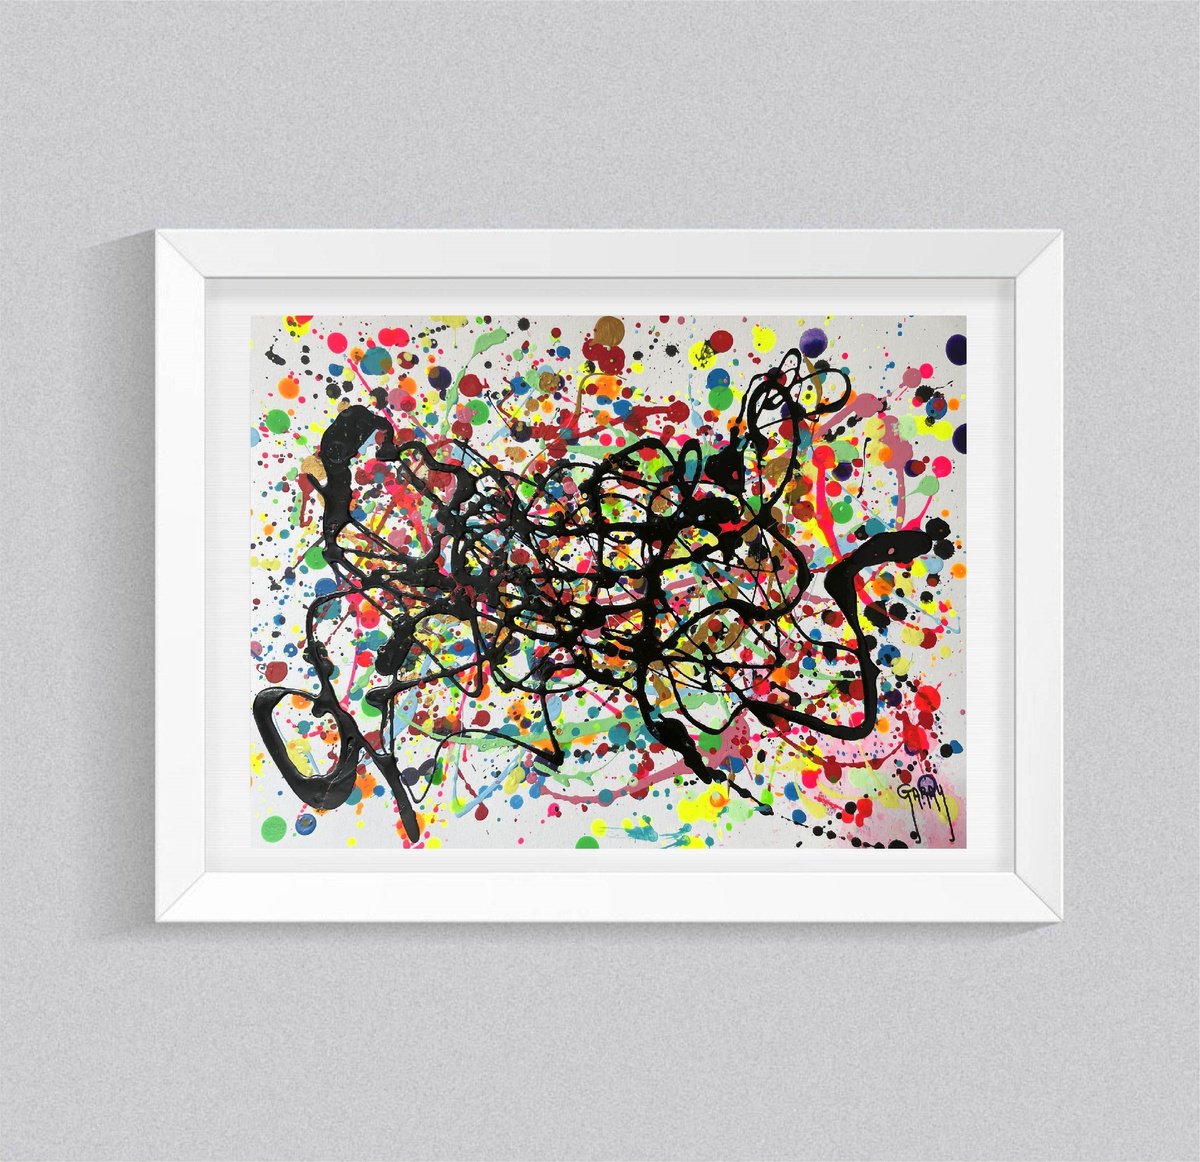 Abstract Pollock 13 by Juan Jose Garay